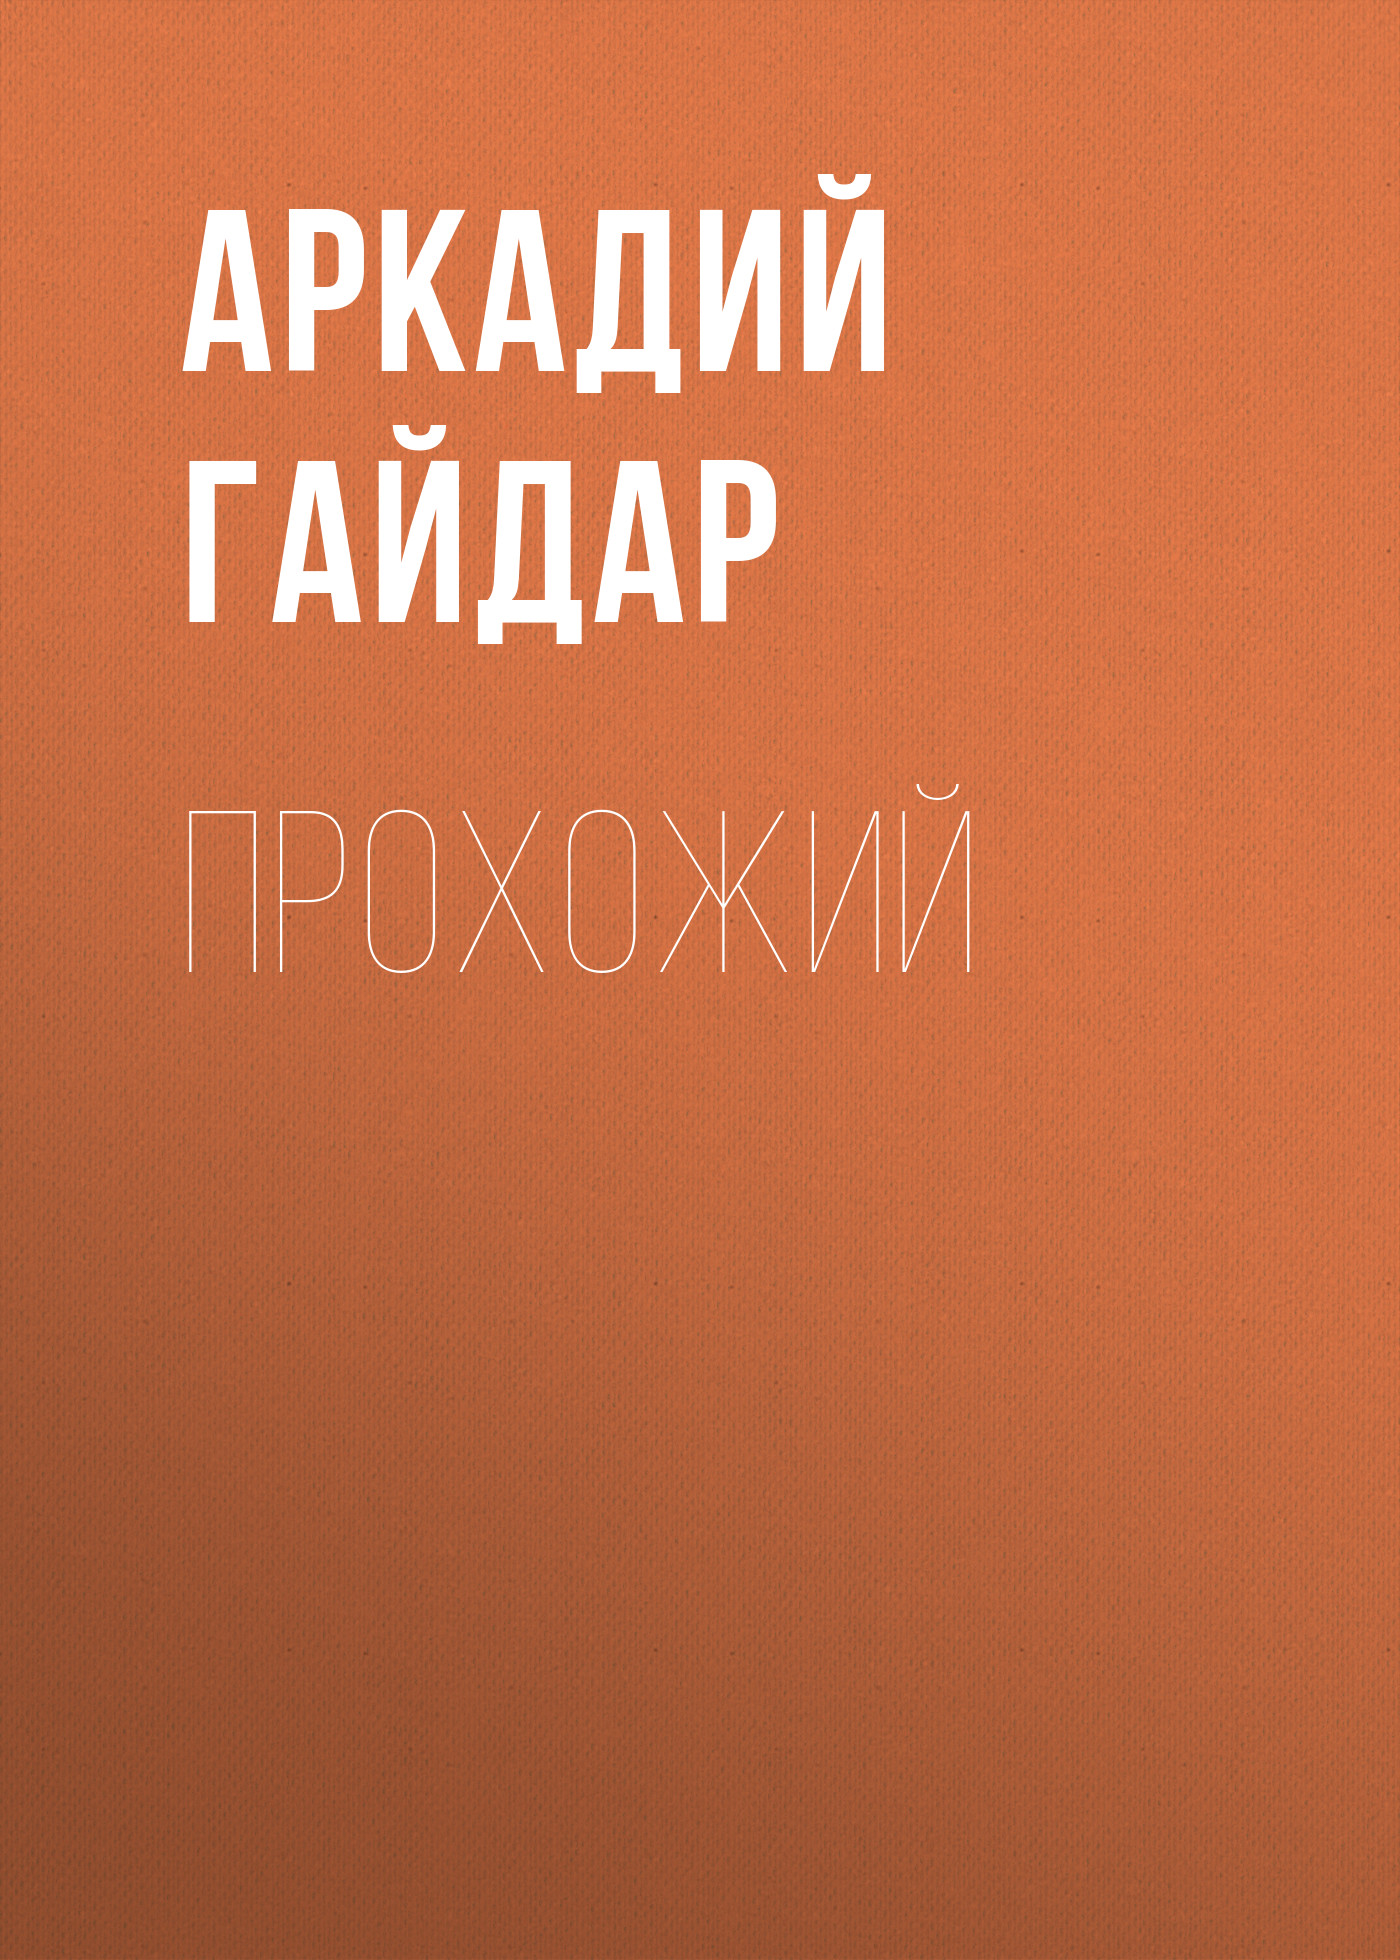 Книга Прохожий из серии , созданная Аркадий Гайдар, может относится к жанру Драматургия, Советская литература, Литература 20 века. Стоимость электронной книги Прохожий с идентификатором 24861040 составляет 5.99 руб.